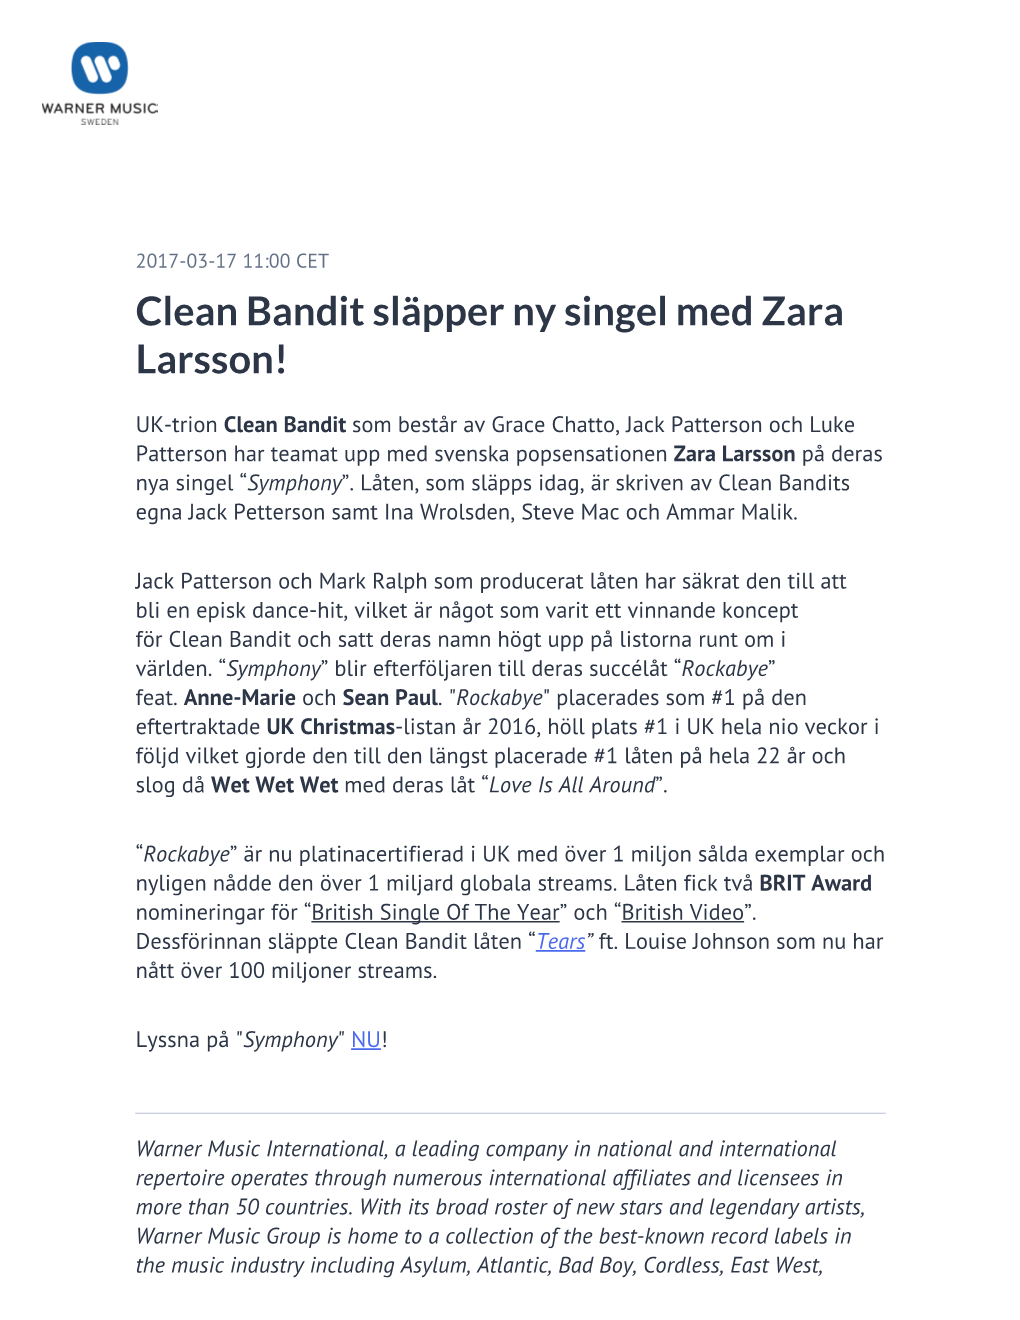 Clean Bandit Släpper Ny Singel Med Zara Larsson!